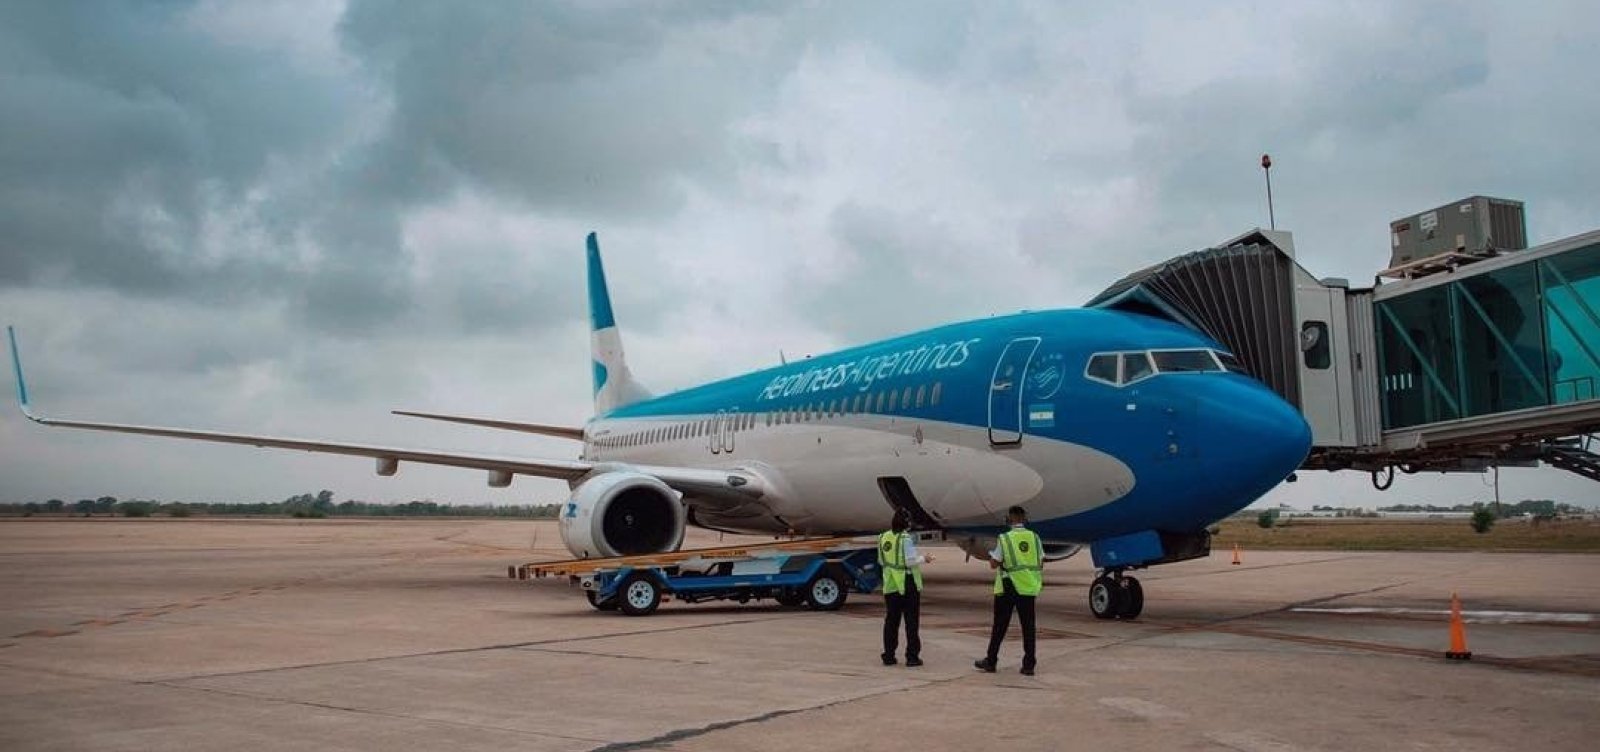 Aerolíneas Argentinas abaixa preço de passagens de Salvador para Buenos Aires